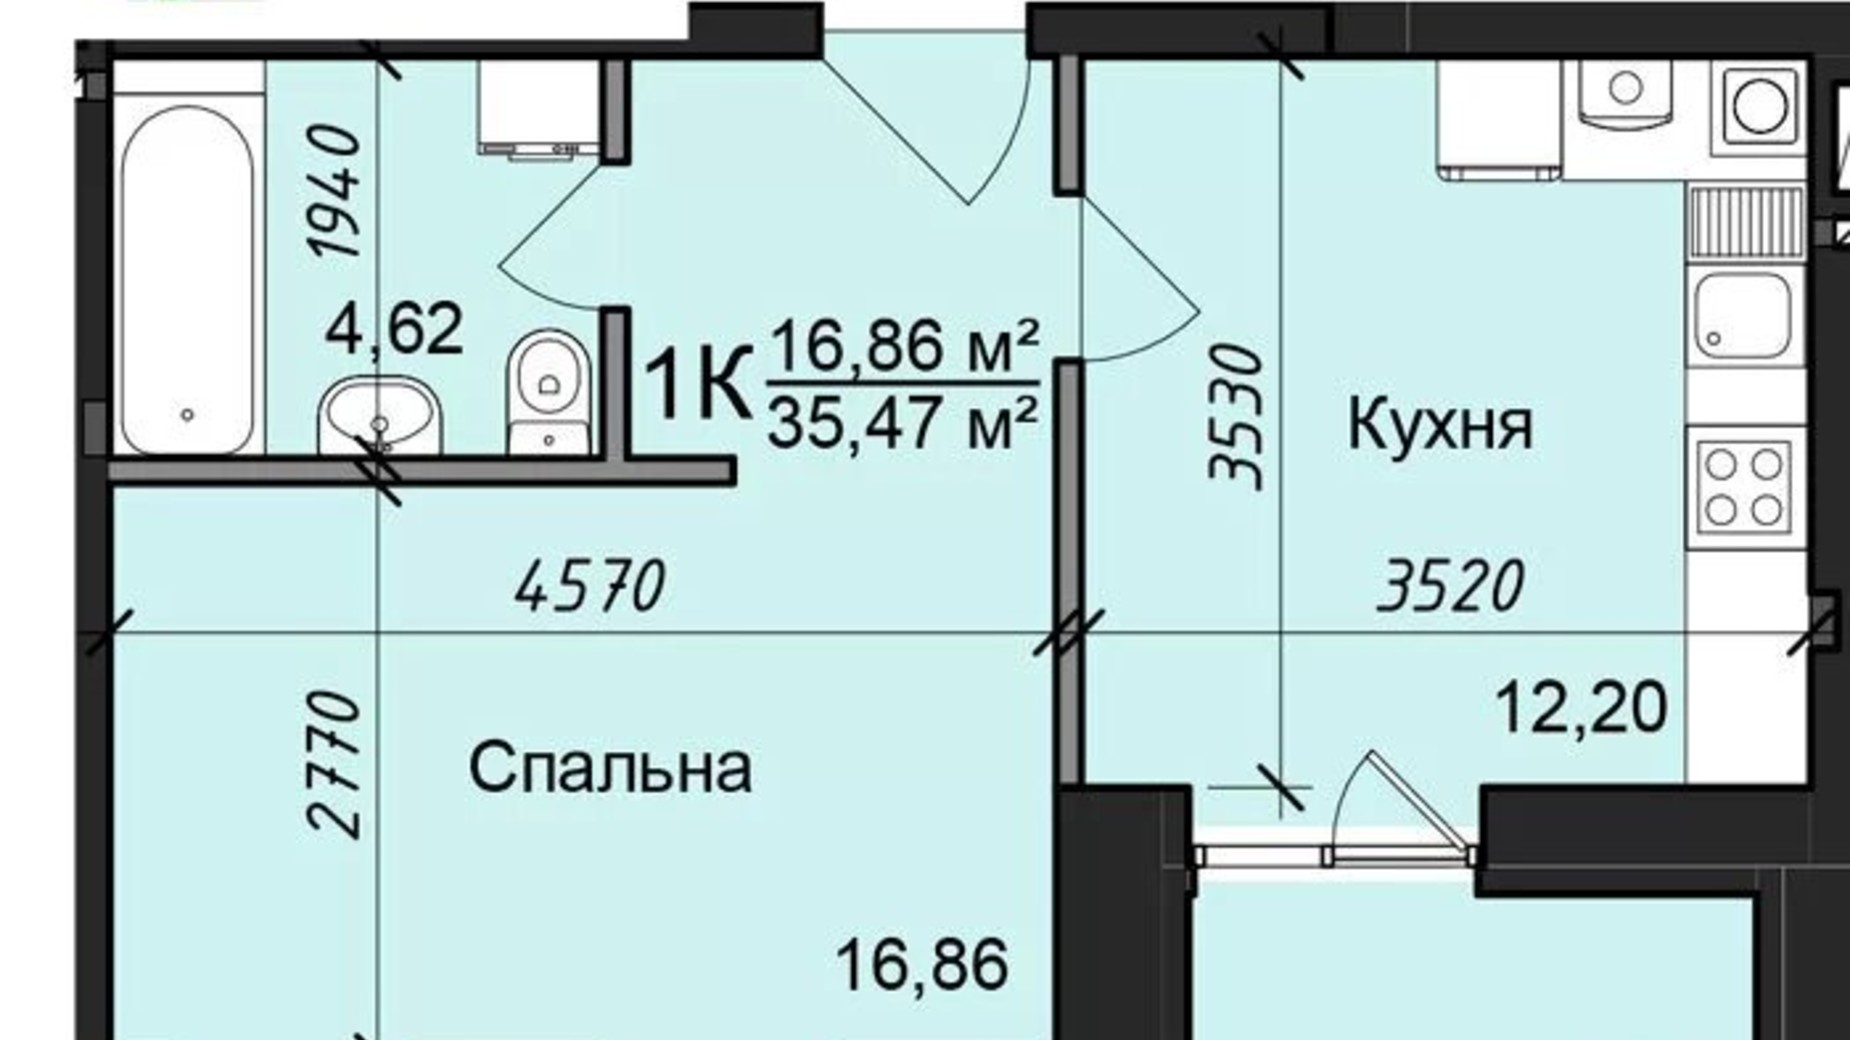 Планировка 1-комнатной квартиры в ЖК Жилой дом 2 35.47 м², фото 320966